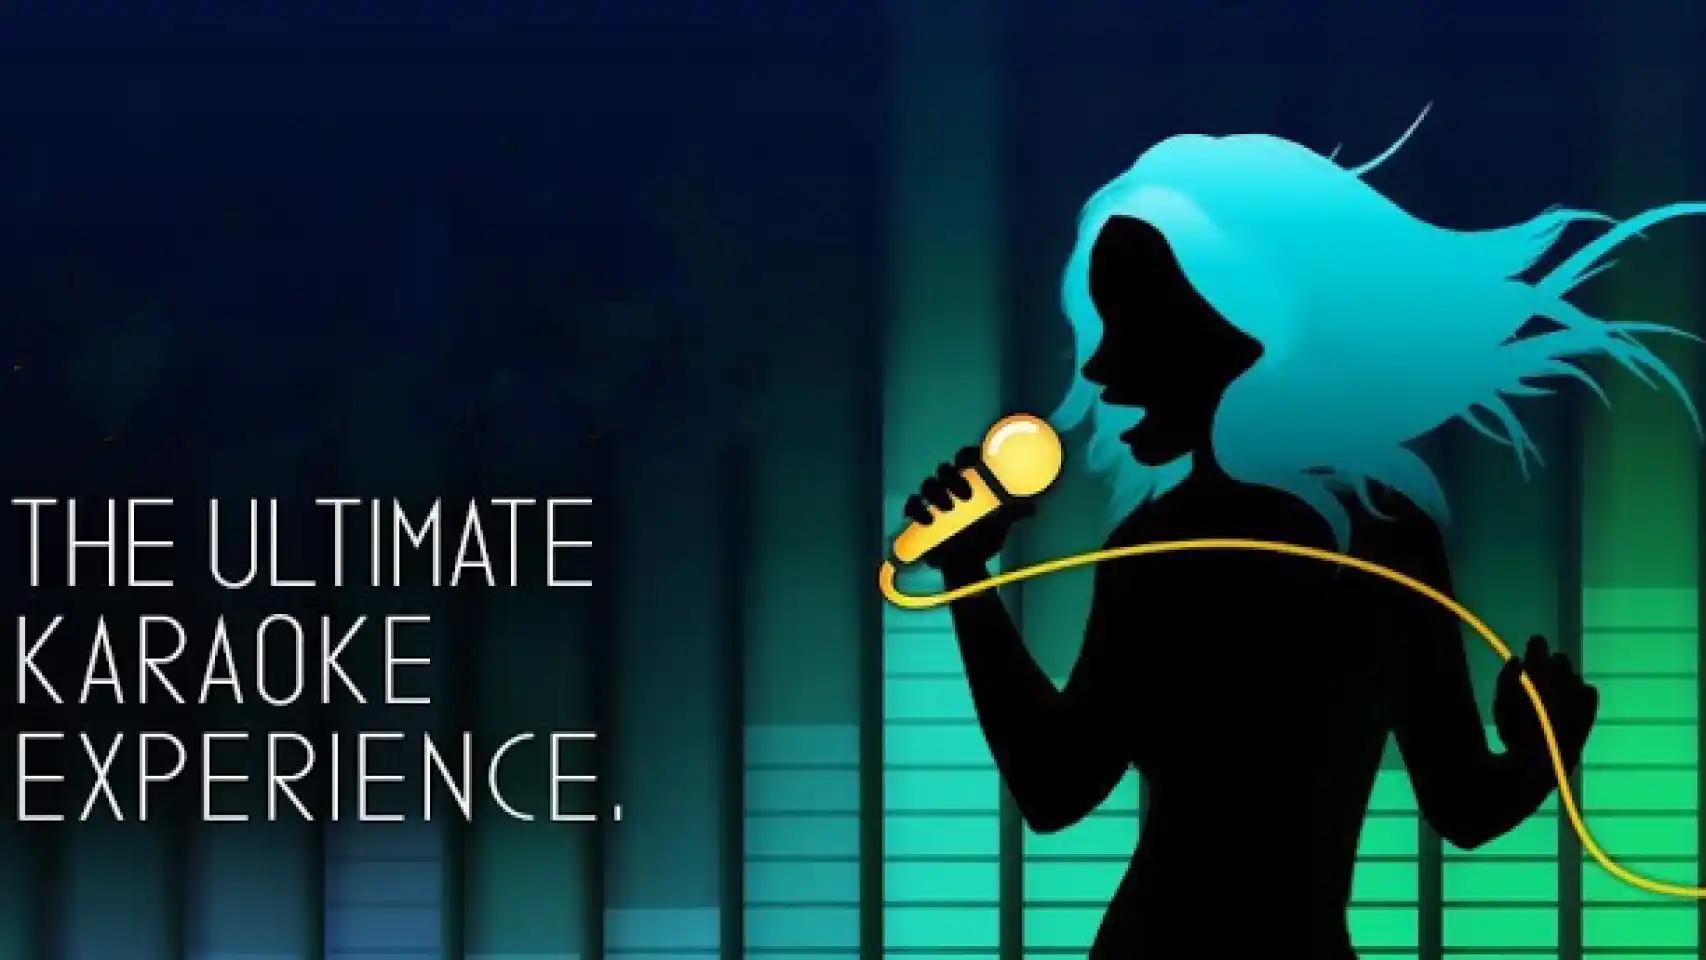 aplicaciones microfonos inteligentes para karaoke en casa - Qué aplicación es buena para karaoke